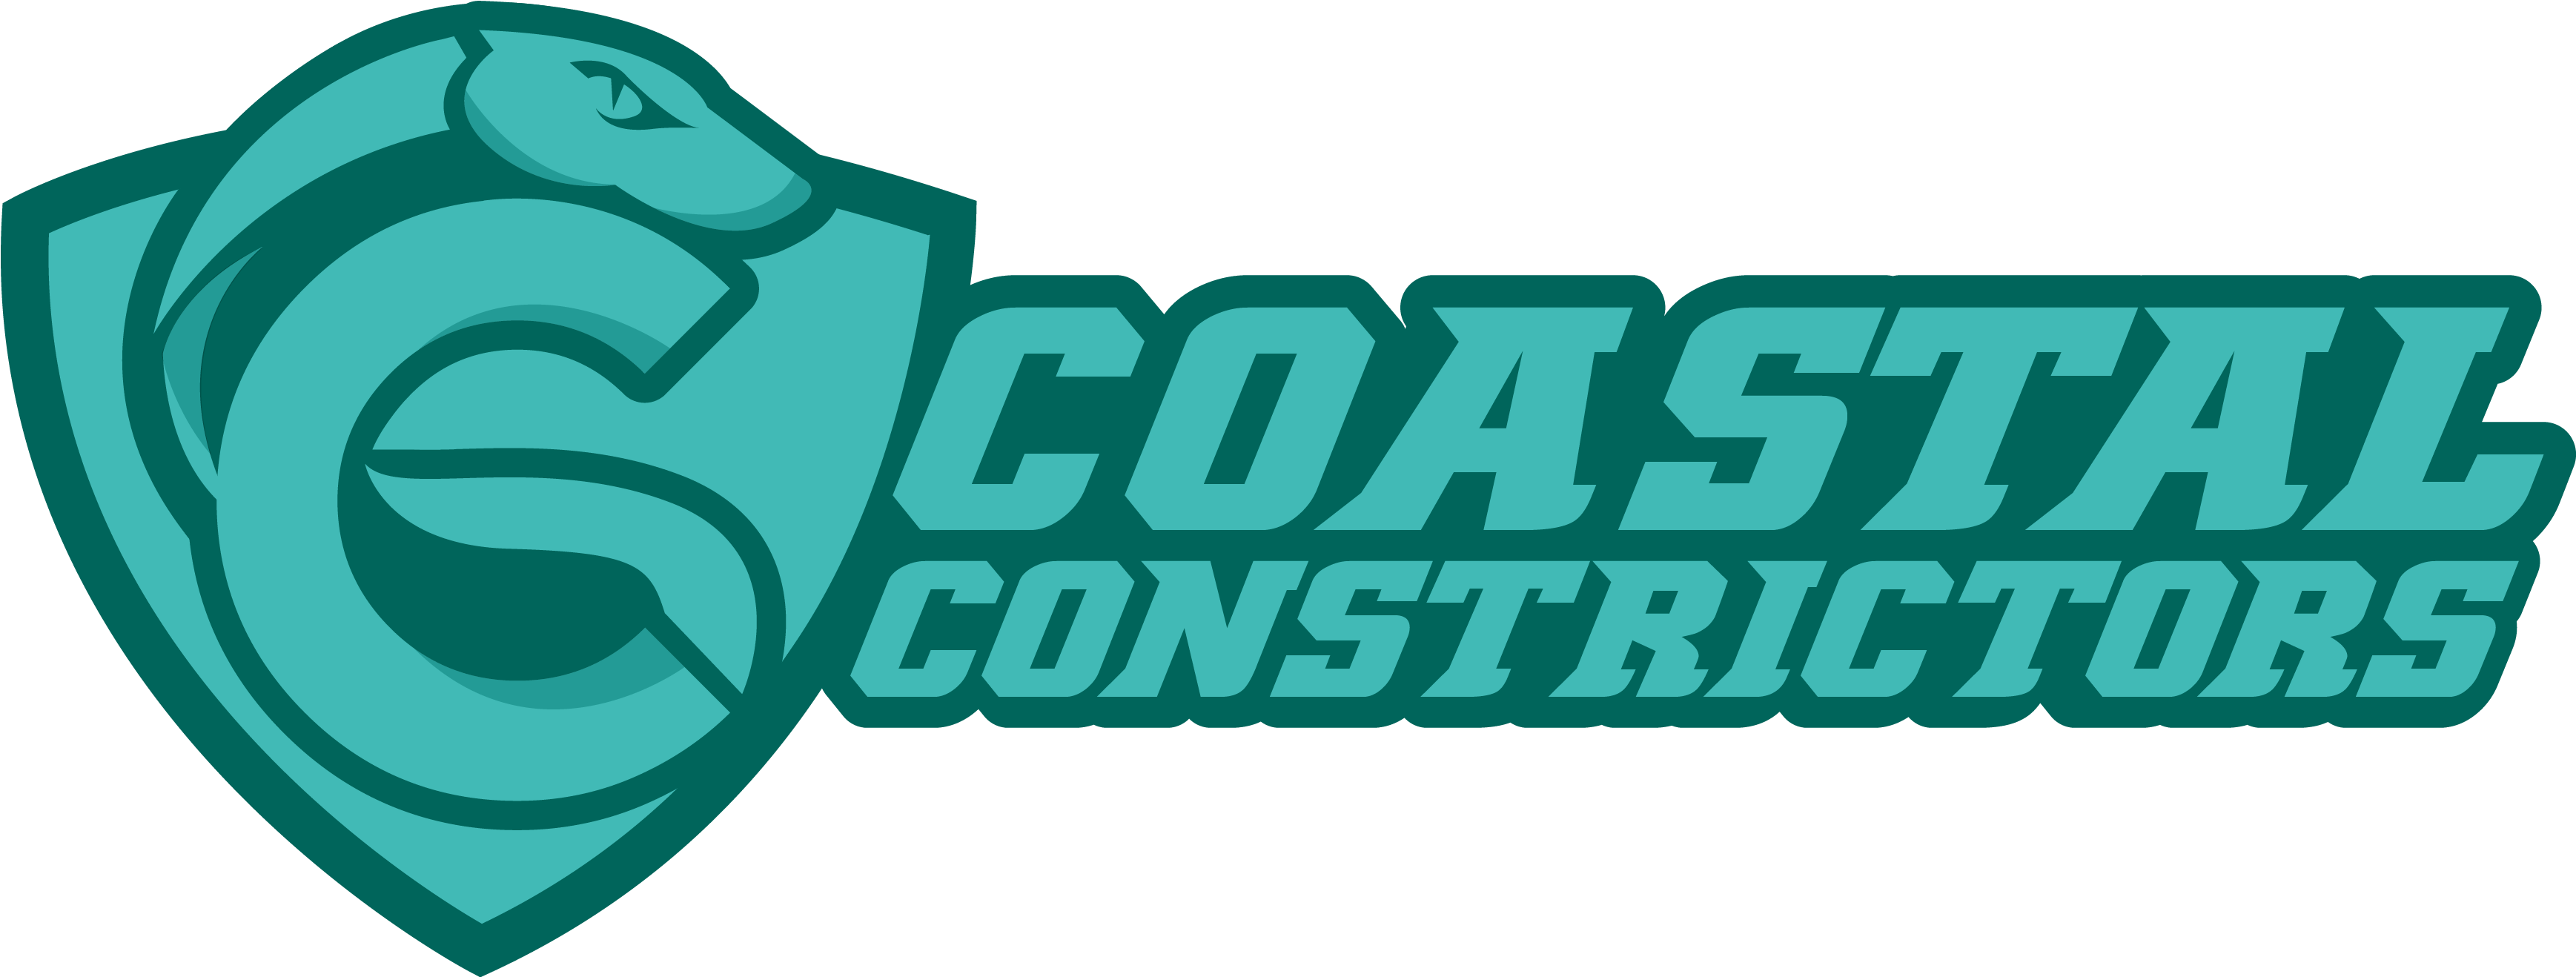 Coastal Constrictors, Llc Clipart (3519x1317), Png Download